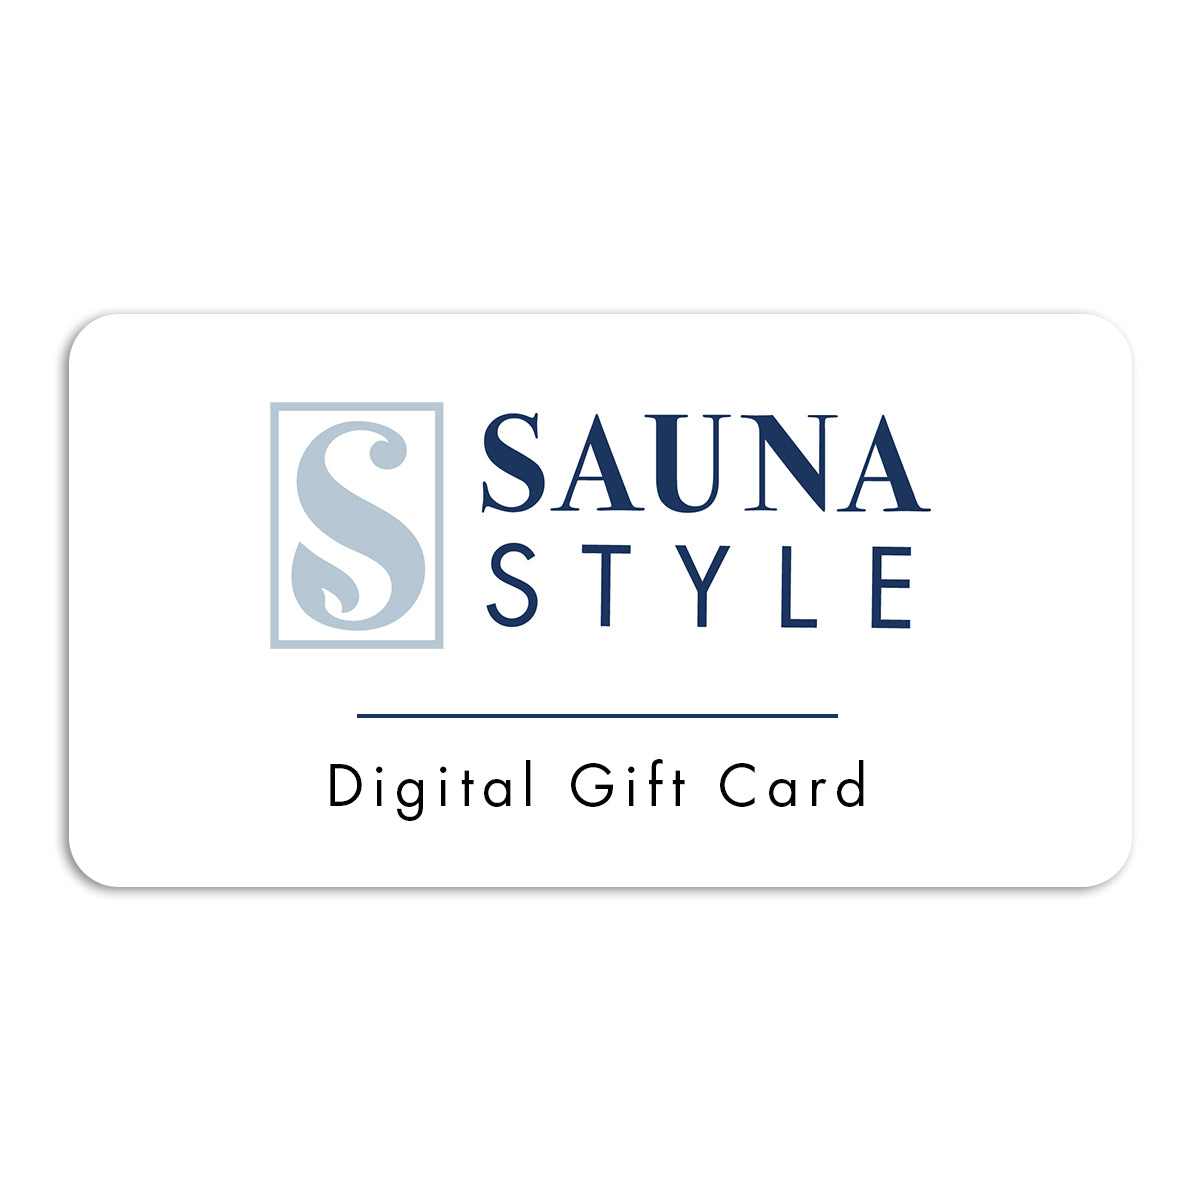 Sauna Style Digital Gift Card